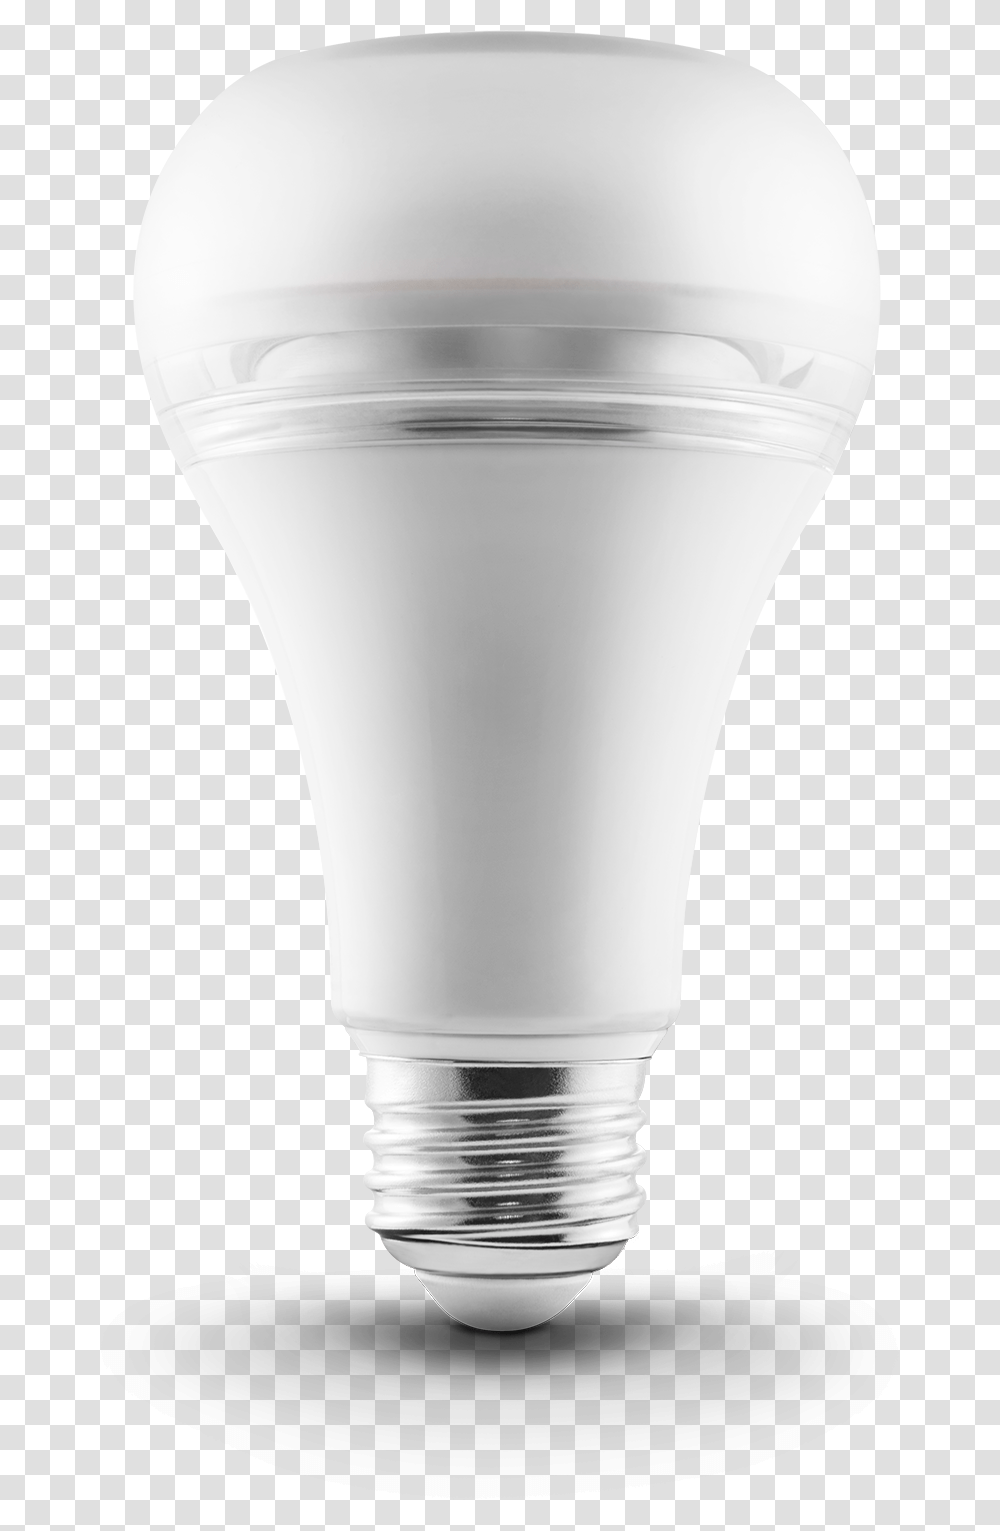 Light Bulb On Off Incandescent Light Bulb, Lightbulb, Milk, Beverage, Drink Transparent Png